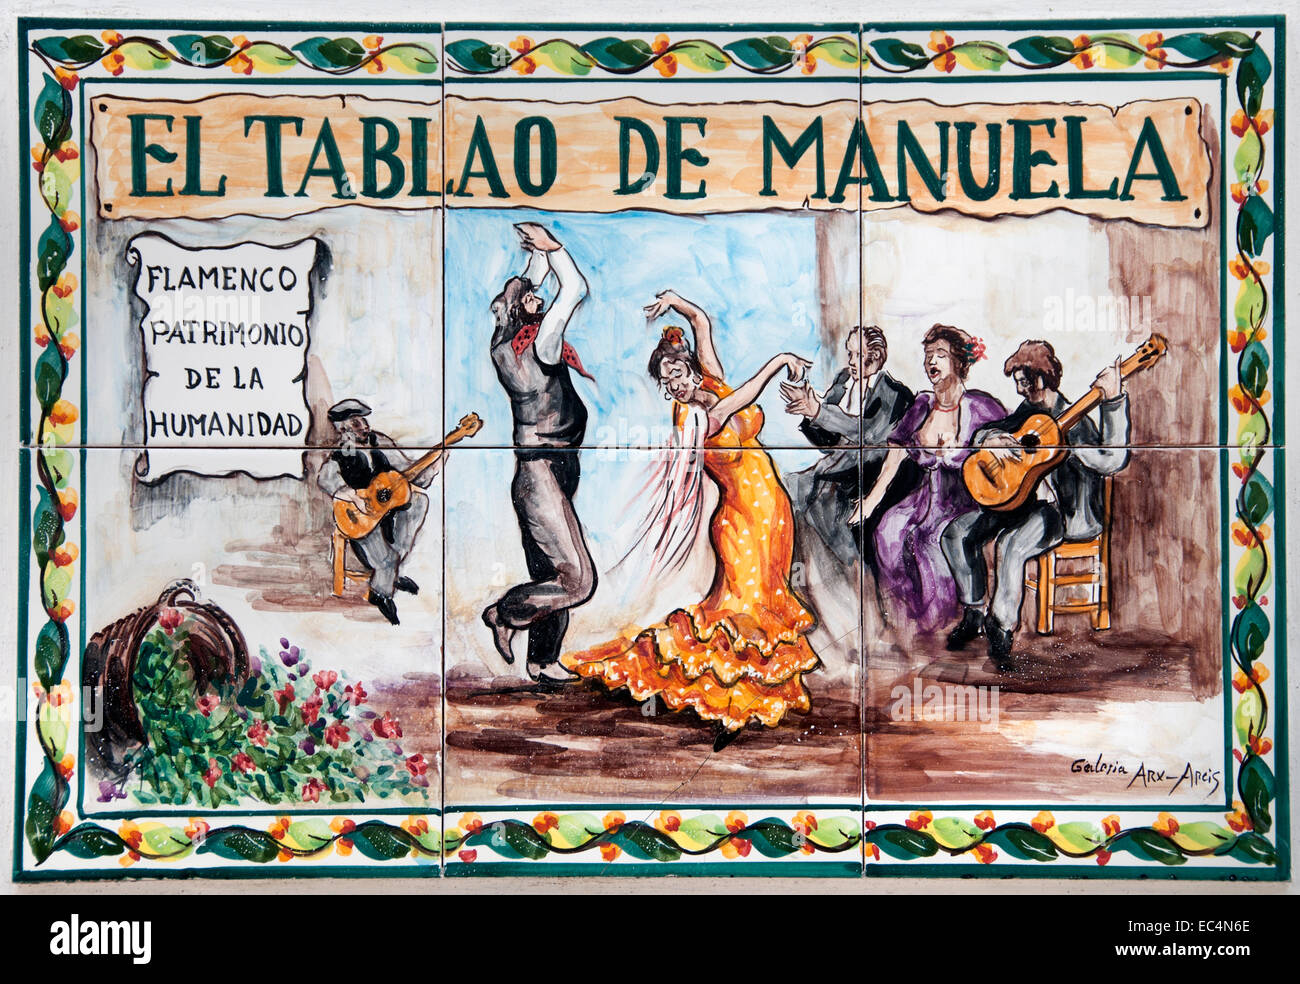 El Tablao Flamenco Manuela Cadiz Andalusien Spanien Spanisch Stockfoto